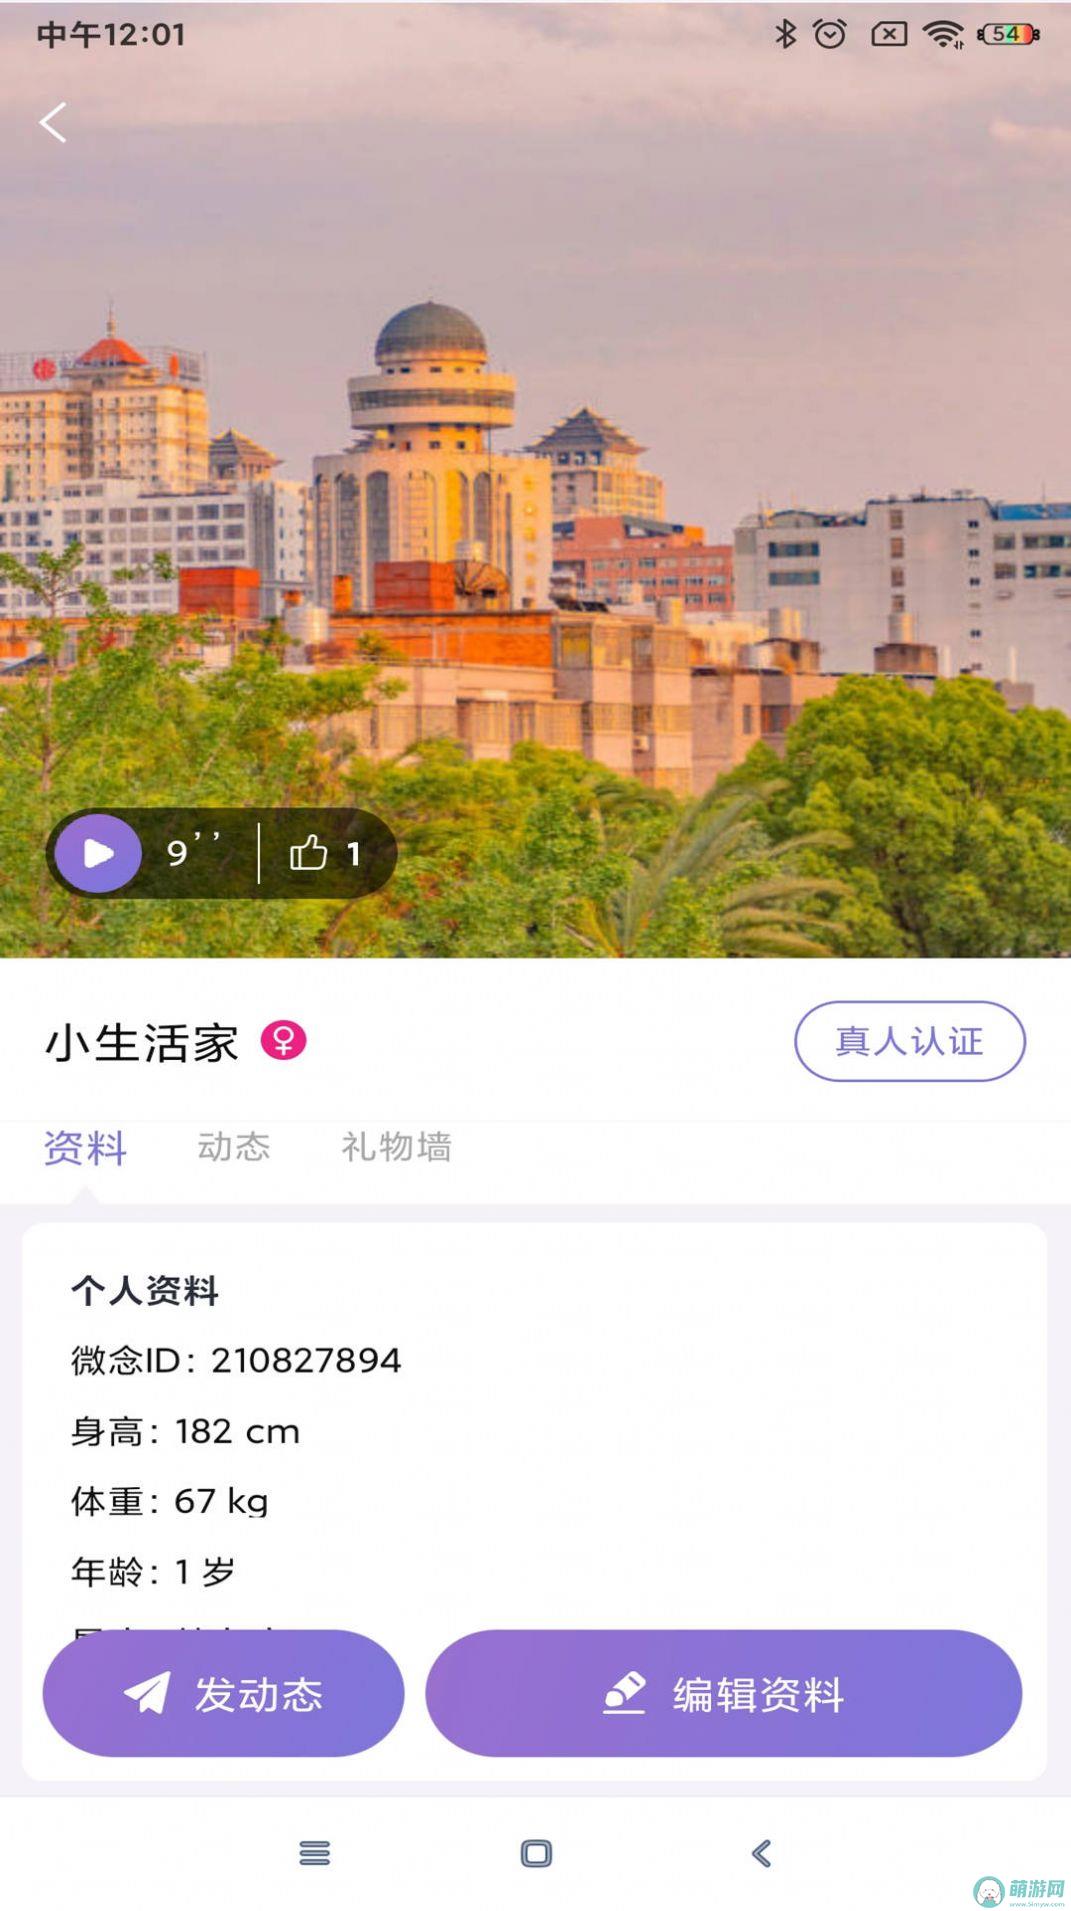 微念交友社区app下载 v0.3.0